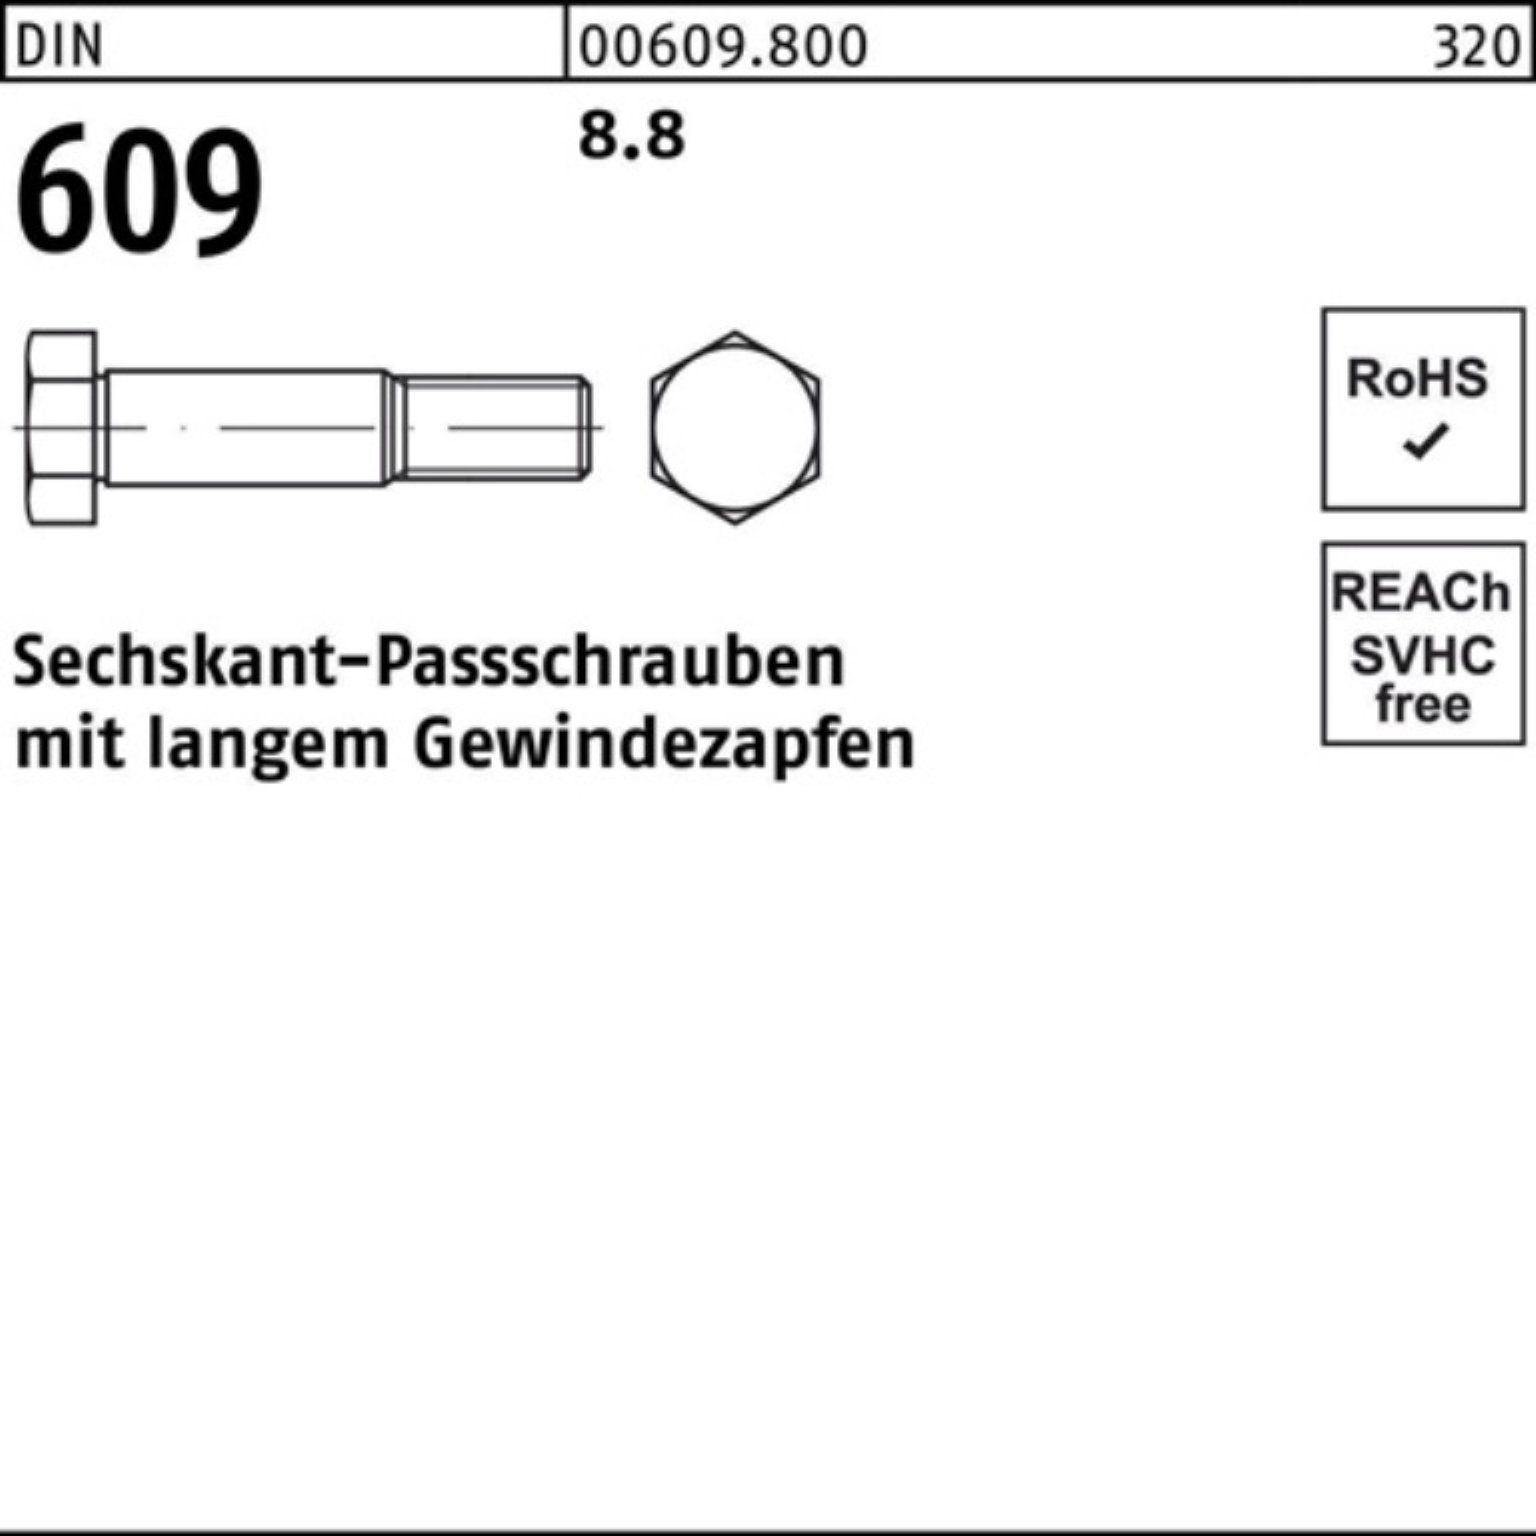 Reyher Schraube 100er 100 langem 609 DIN Gewindezapfen Sechskantpassschraube Pack M10x